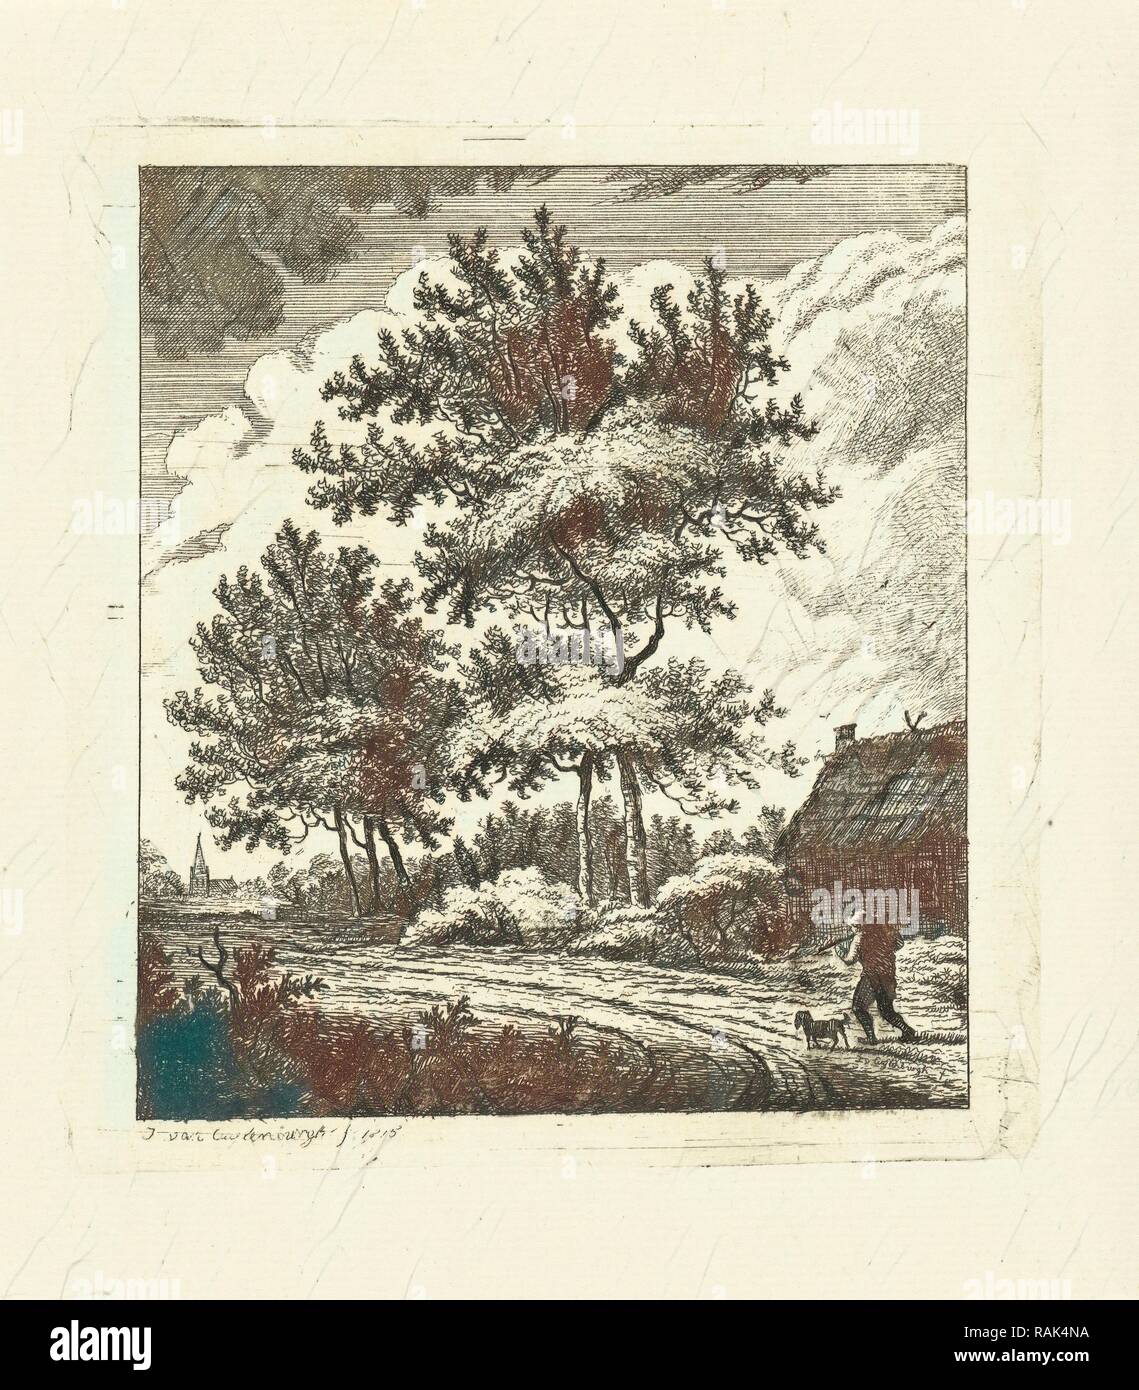 Paesaggio con country road, Johannes van Cuylenburgh, 1815. Reinventato da Gibon. Arte Classica con un tocco di moderno reinventato Foto Stock